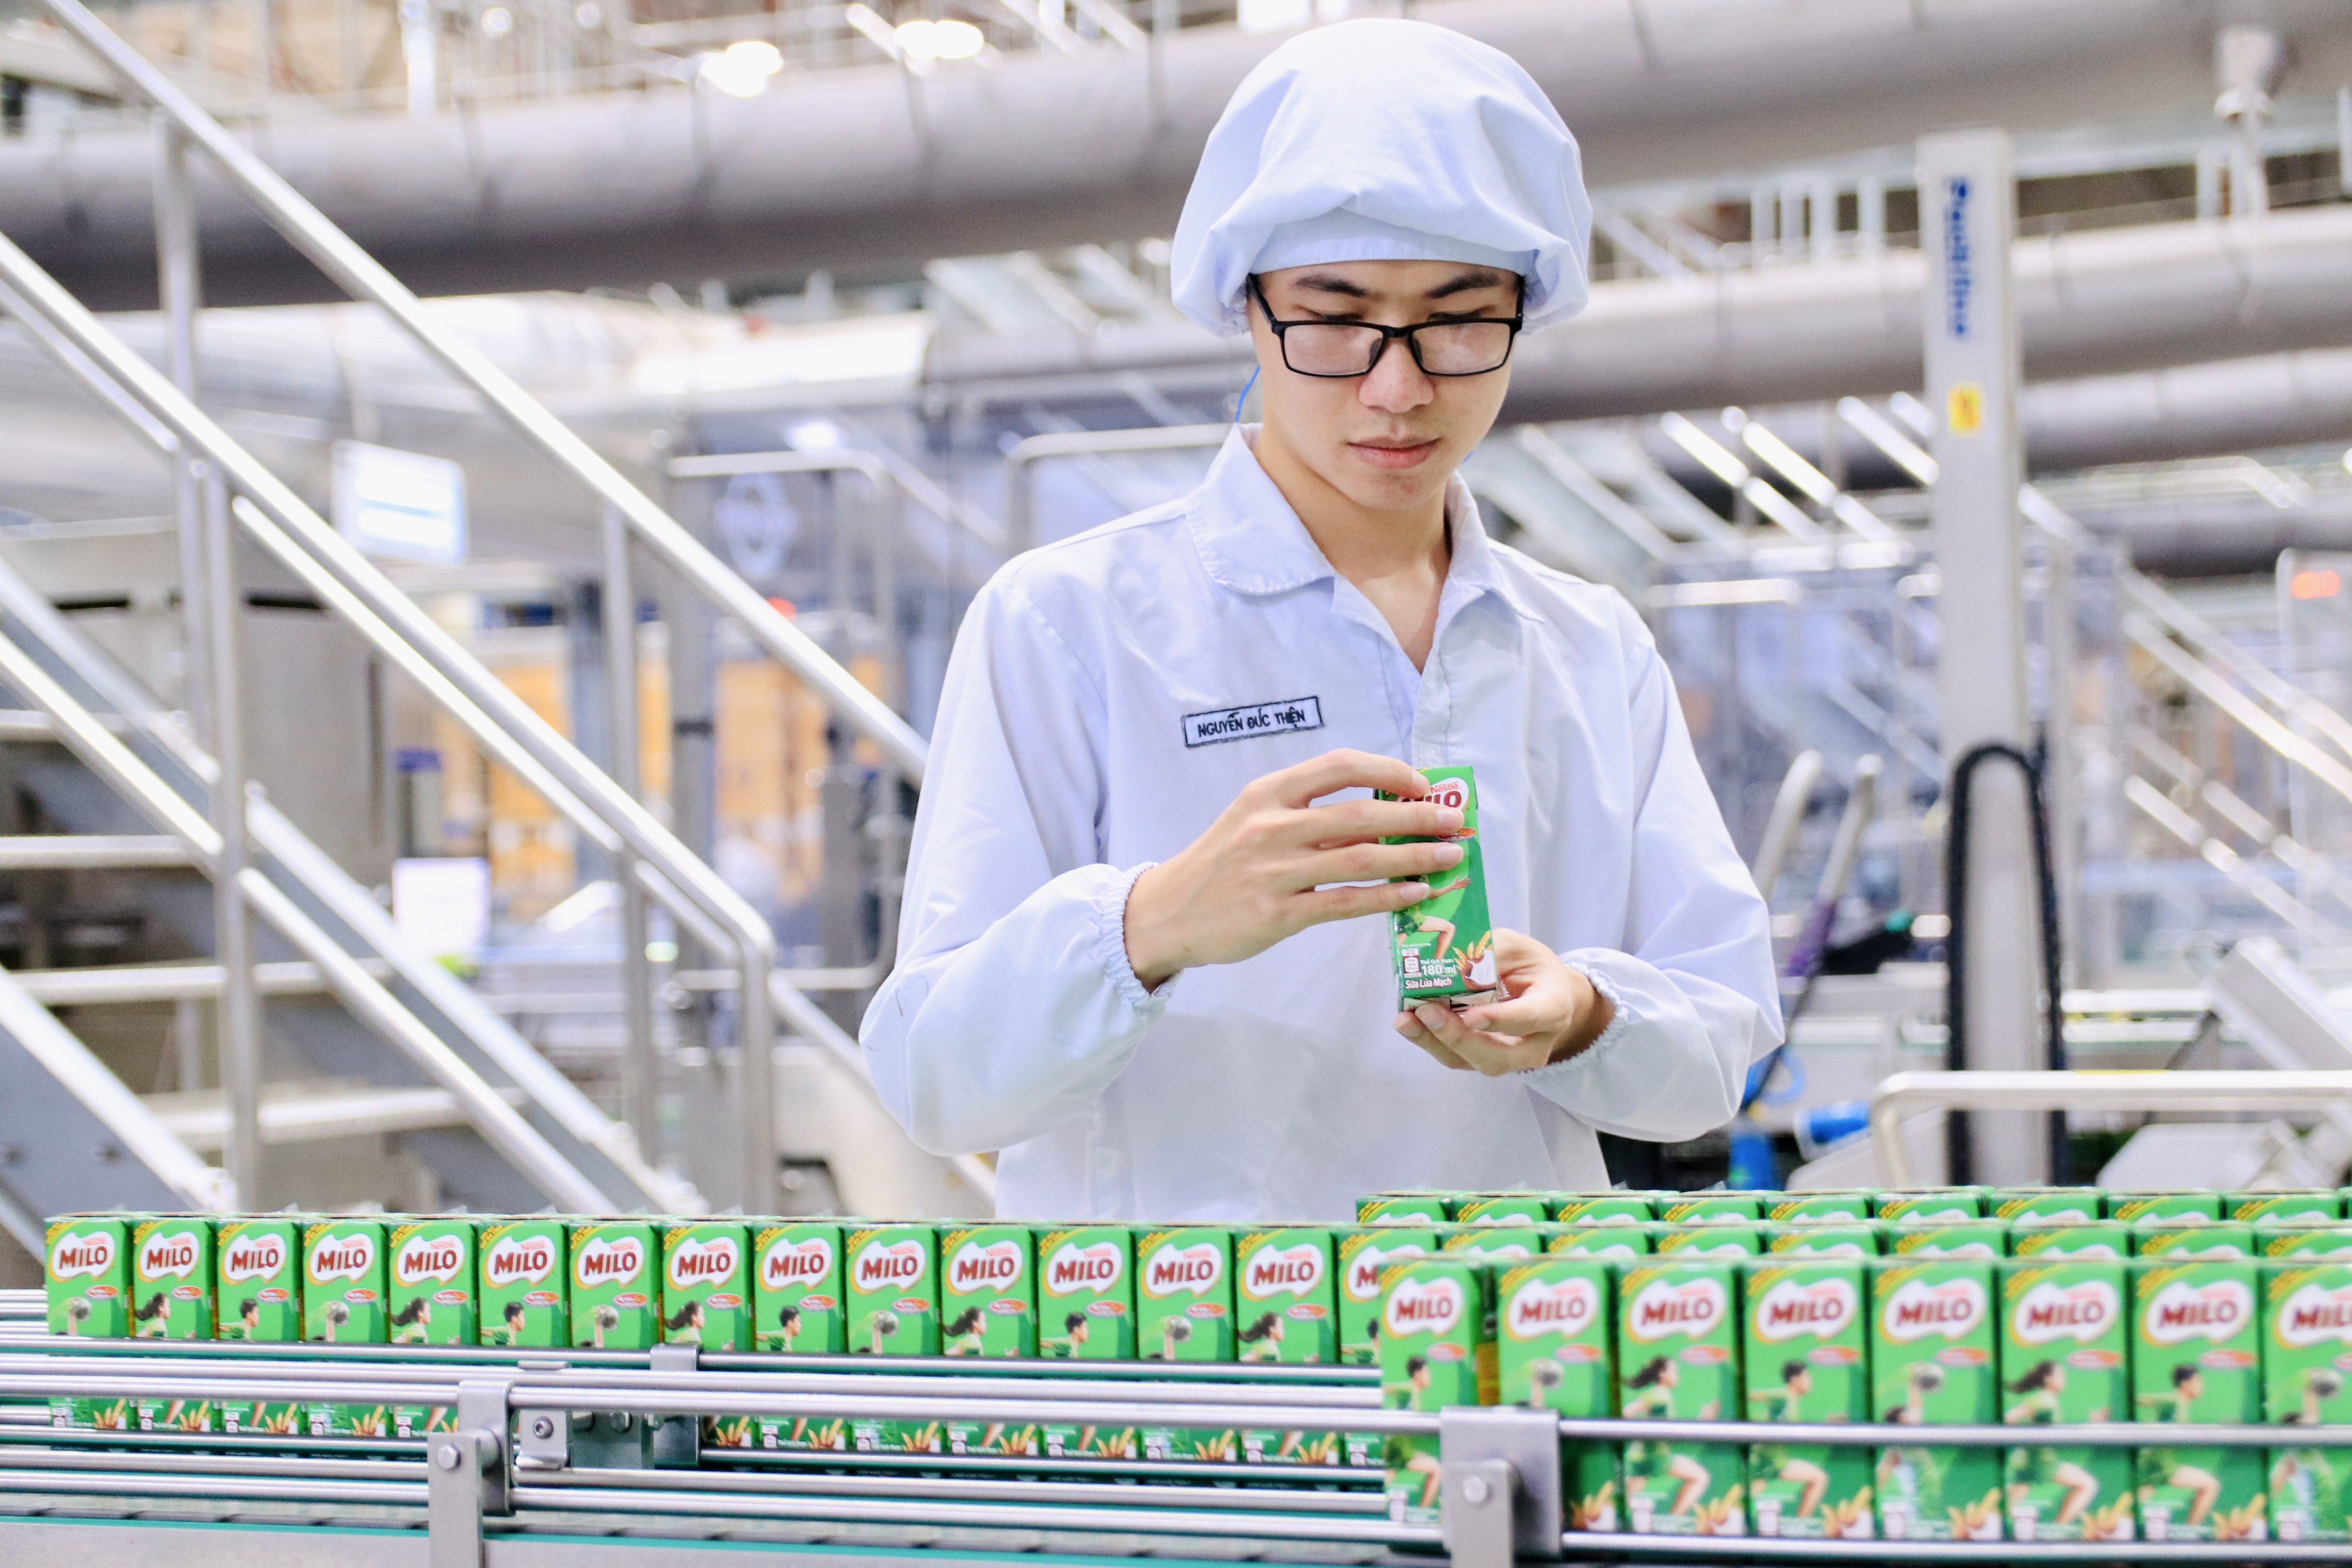 Nhà máy Nestlé Bông Sen ưu tiên trang bị và phát triển các kỹ năng cần thiết cho đội ngũ nhân viên để tiếp cận và làm chủ công nghệ